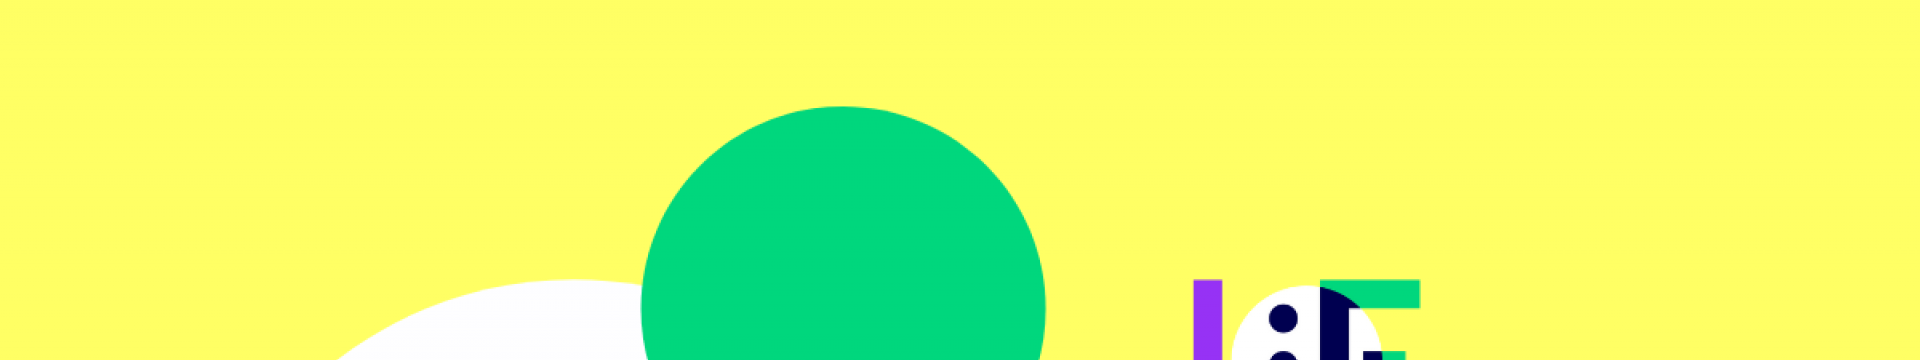 gelbe Flächer, weißer Halbkreis und grüner Kreis darüber. Rechts das Logo des University:Future Festivals